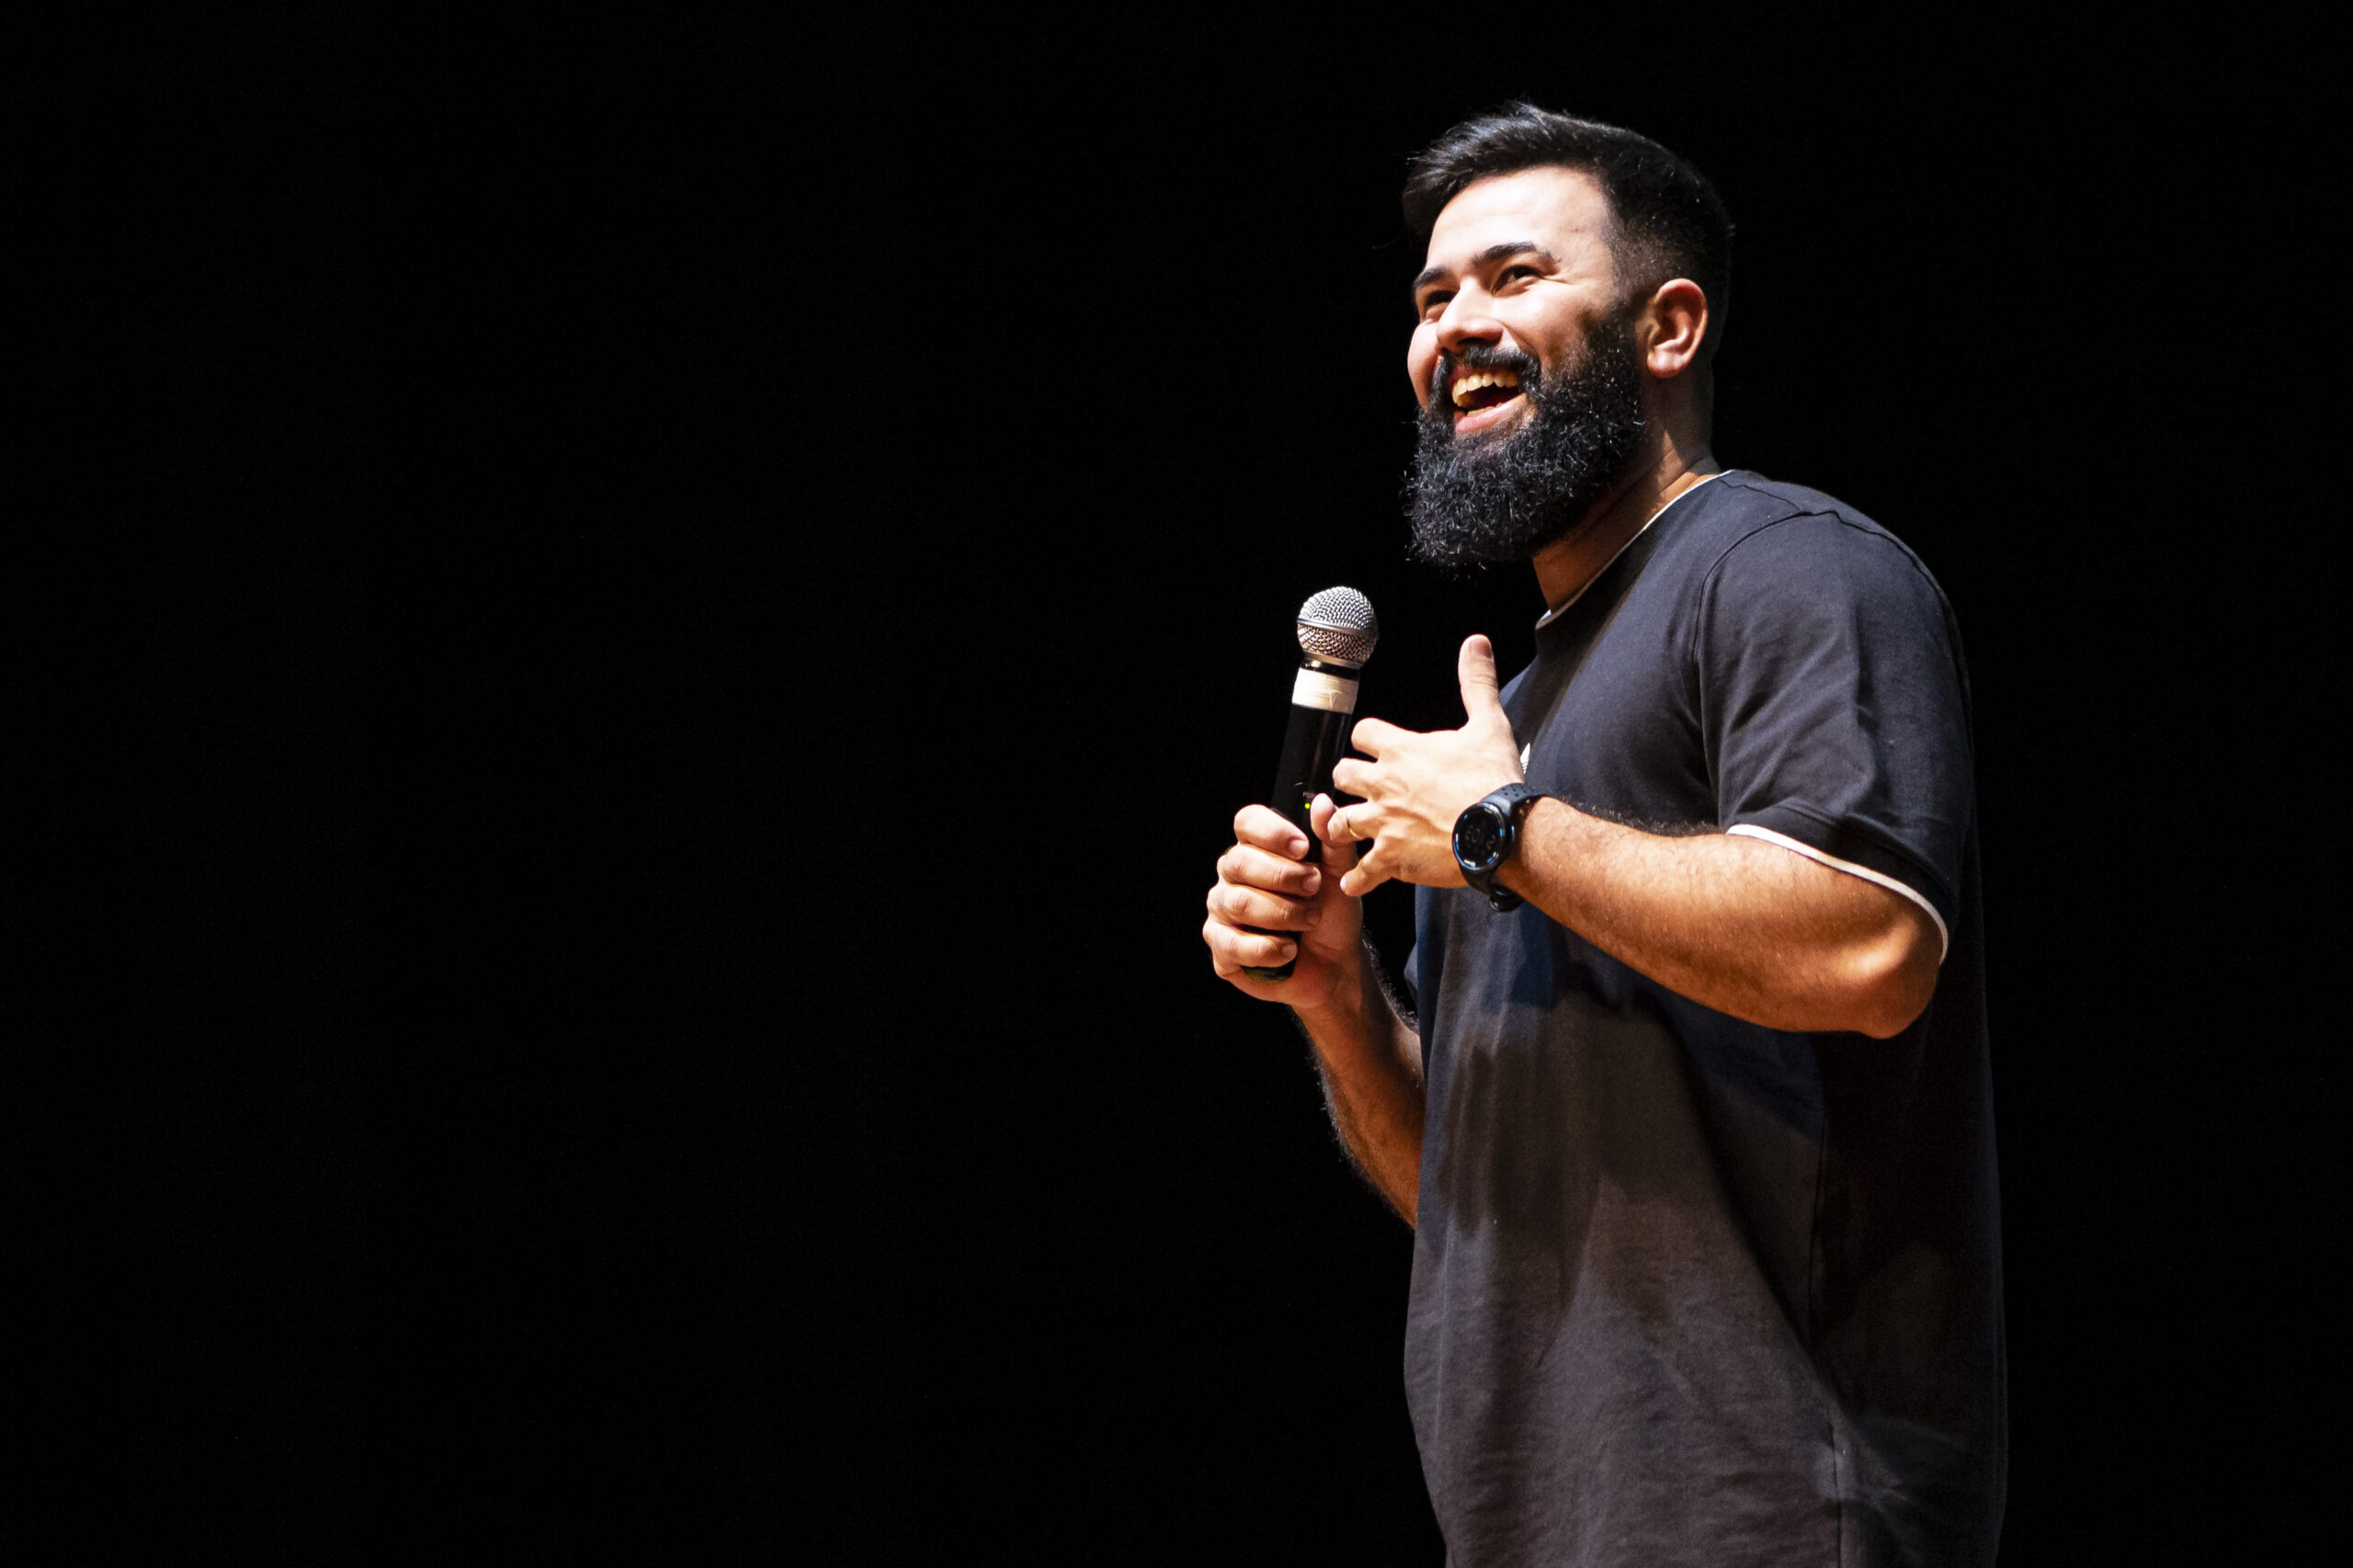 Douglas Di Lima apresenta o espetáculo de stand up comedy “Vida de Crente” no palco do Imperator, no Rio de Janeiro